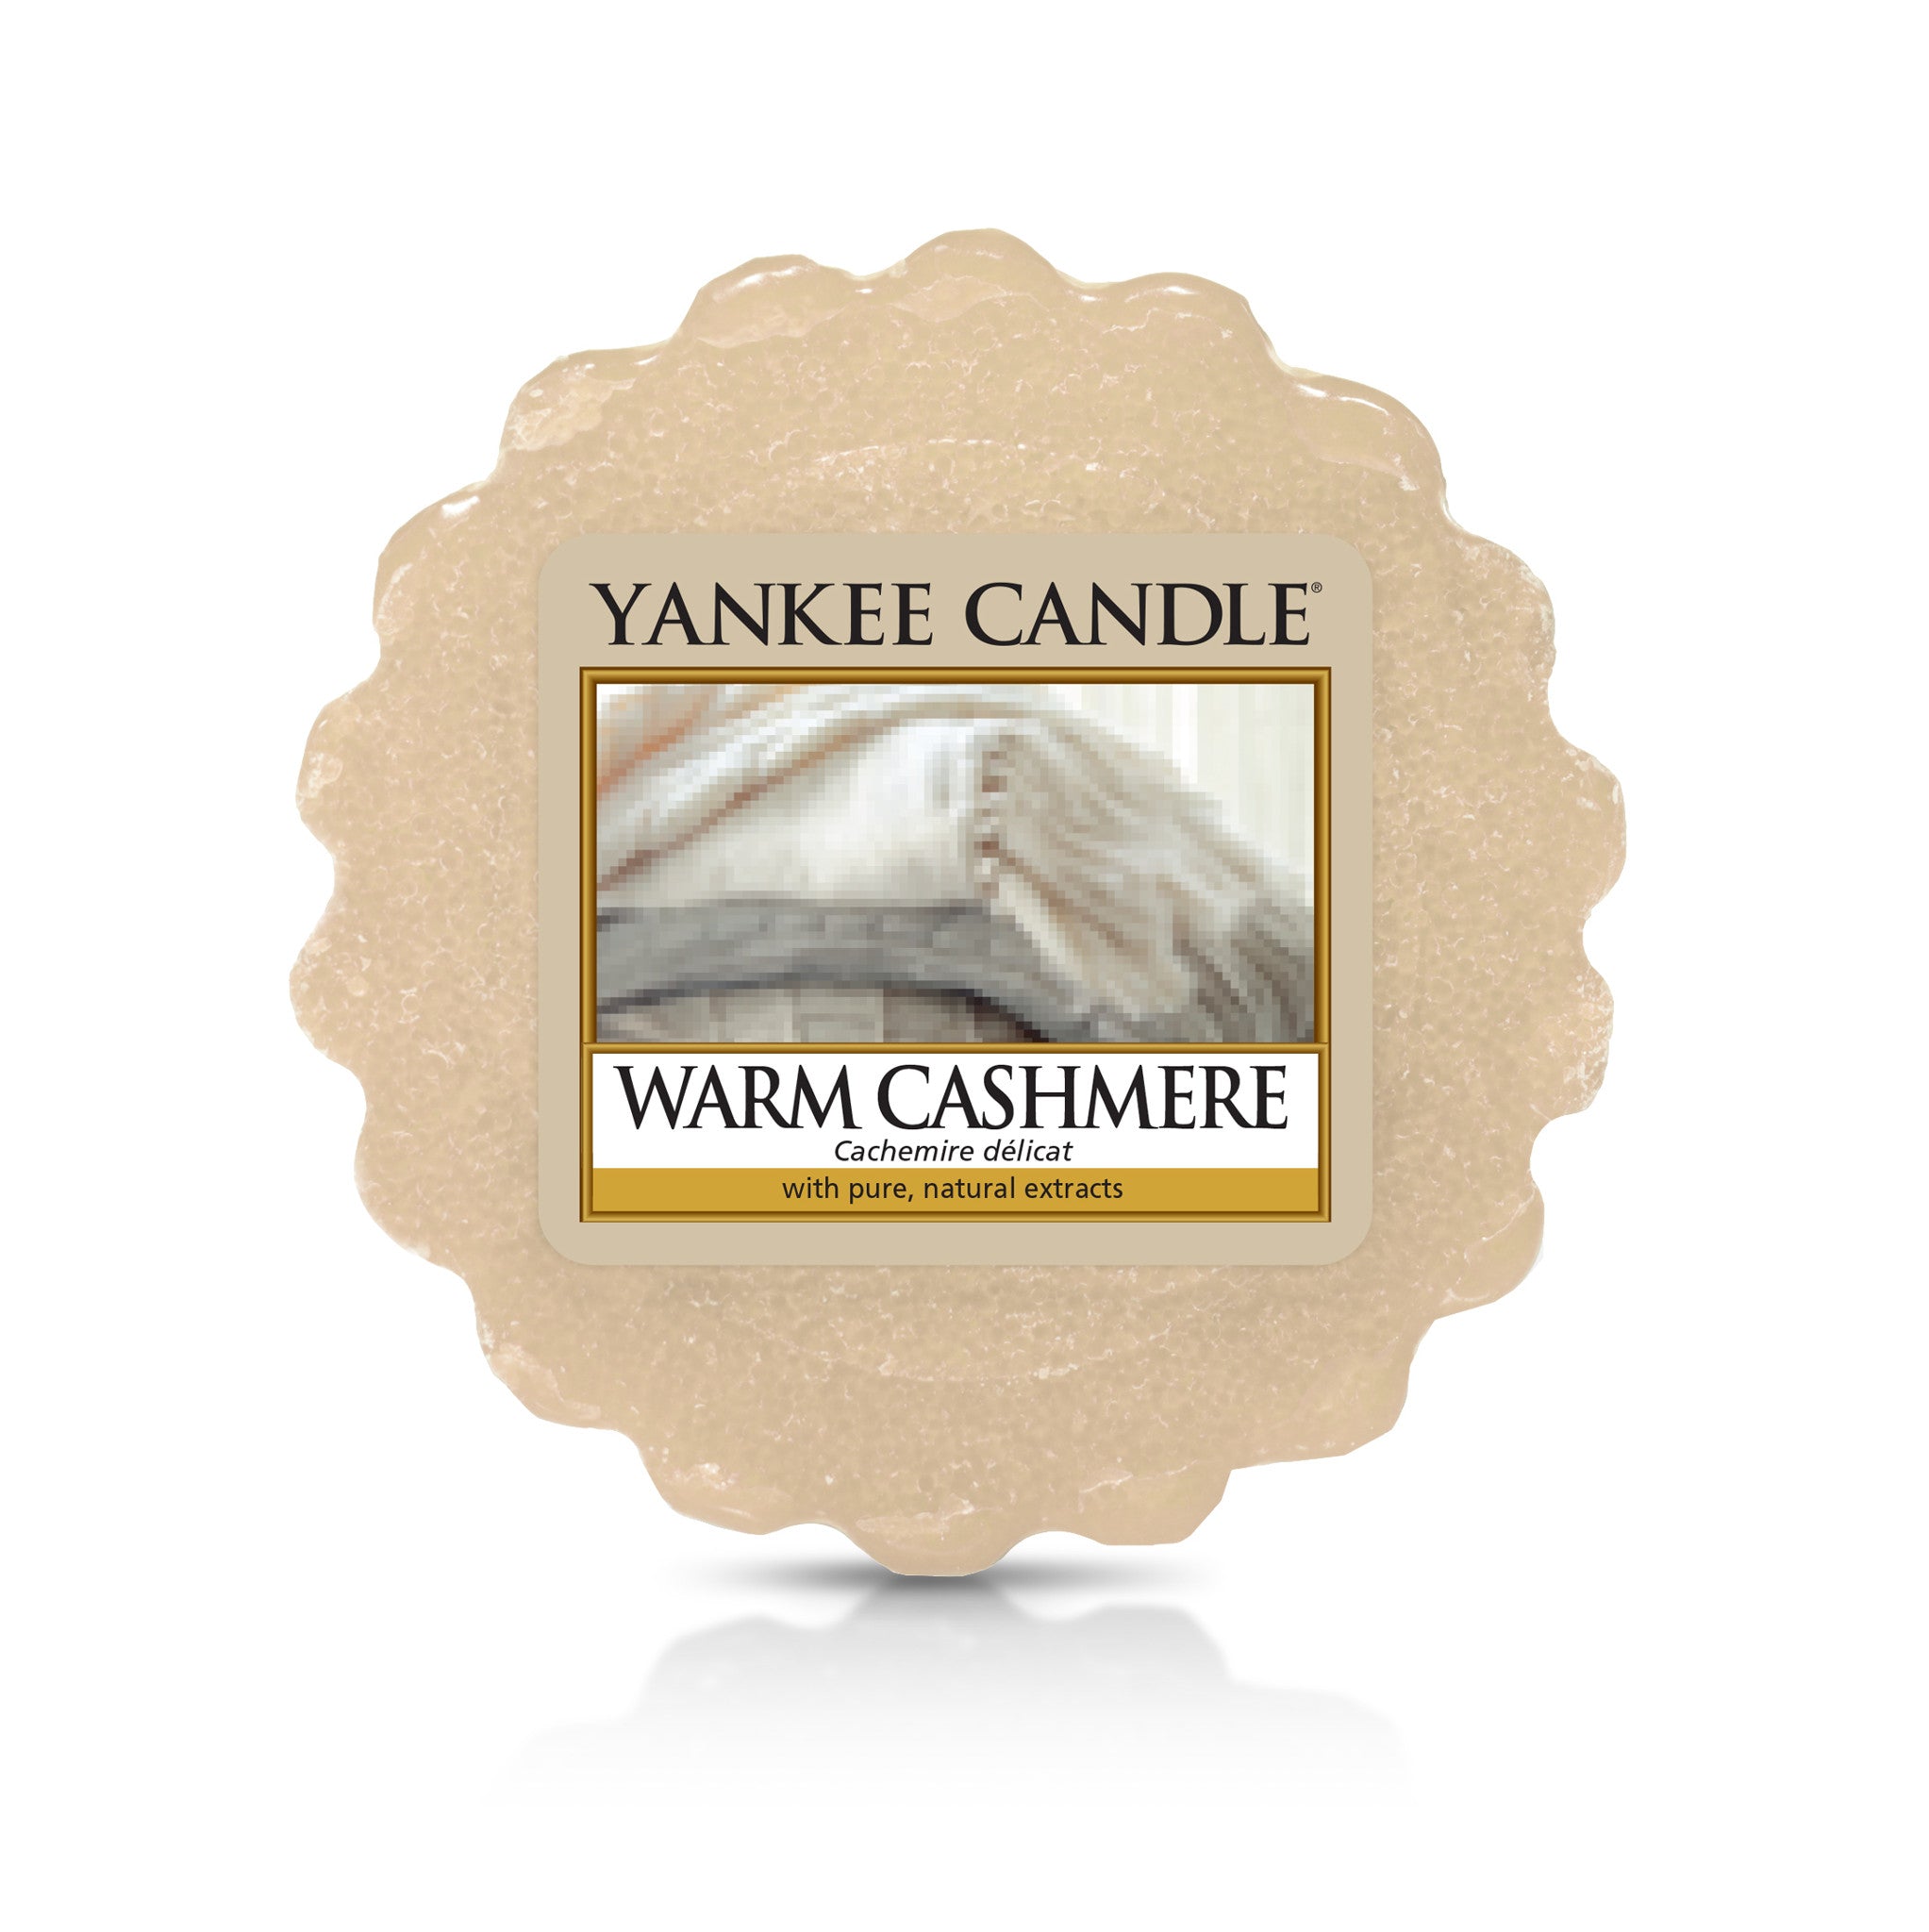 WARM CASHMERE -Yankee Candle- Tart